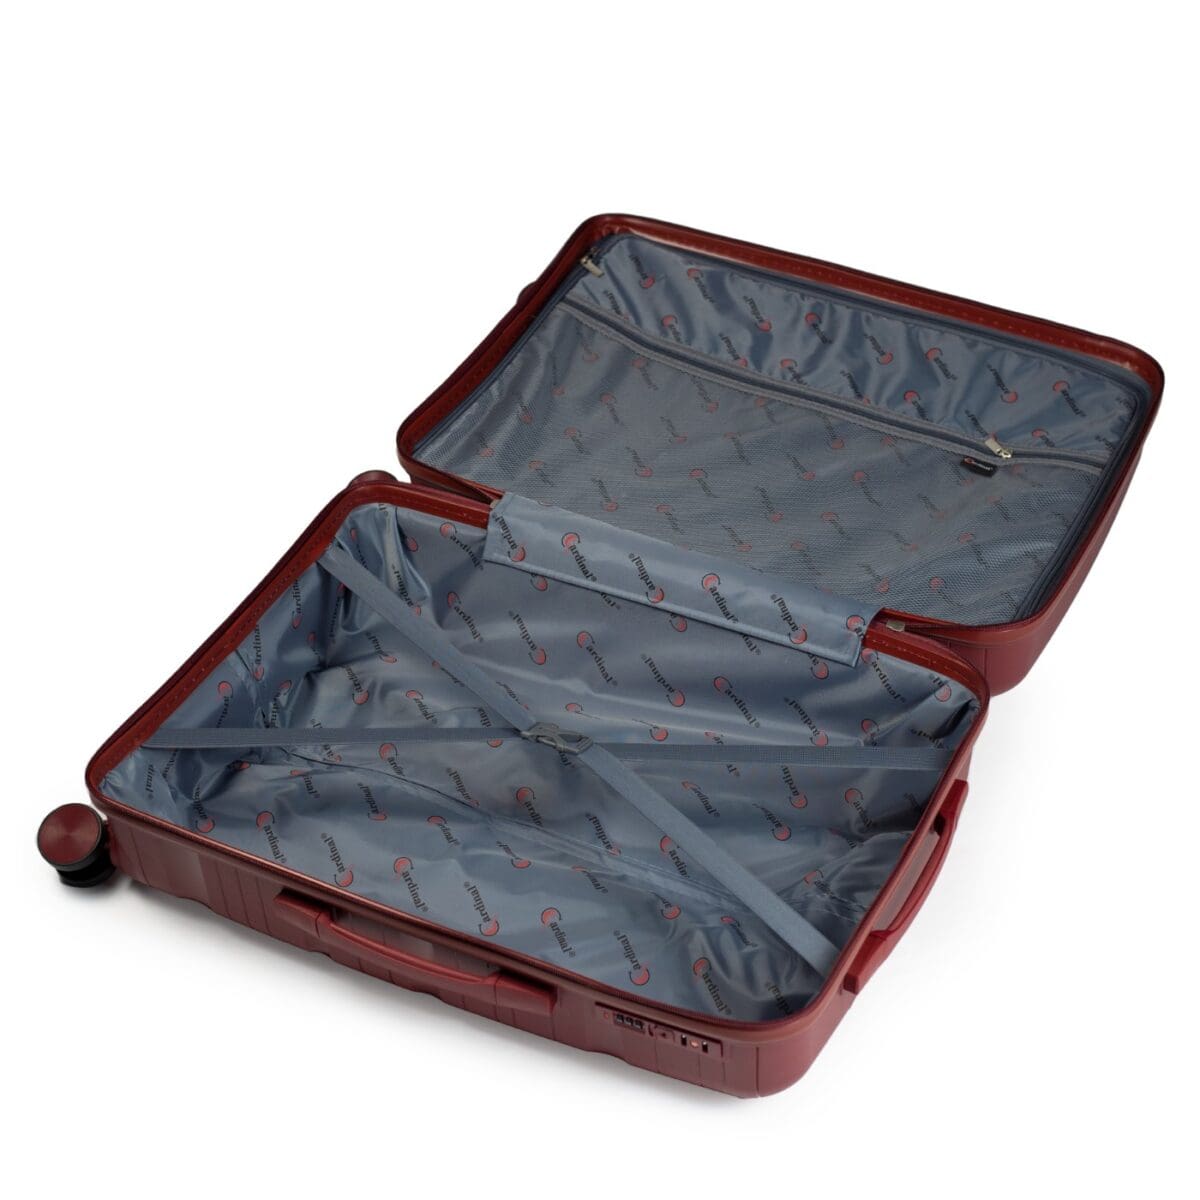 Εσωτερικό βαλίτσας μπορντό με διαχωριστικό για τα ρούχα και τσέπη με φερμουάρ